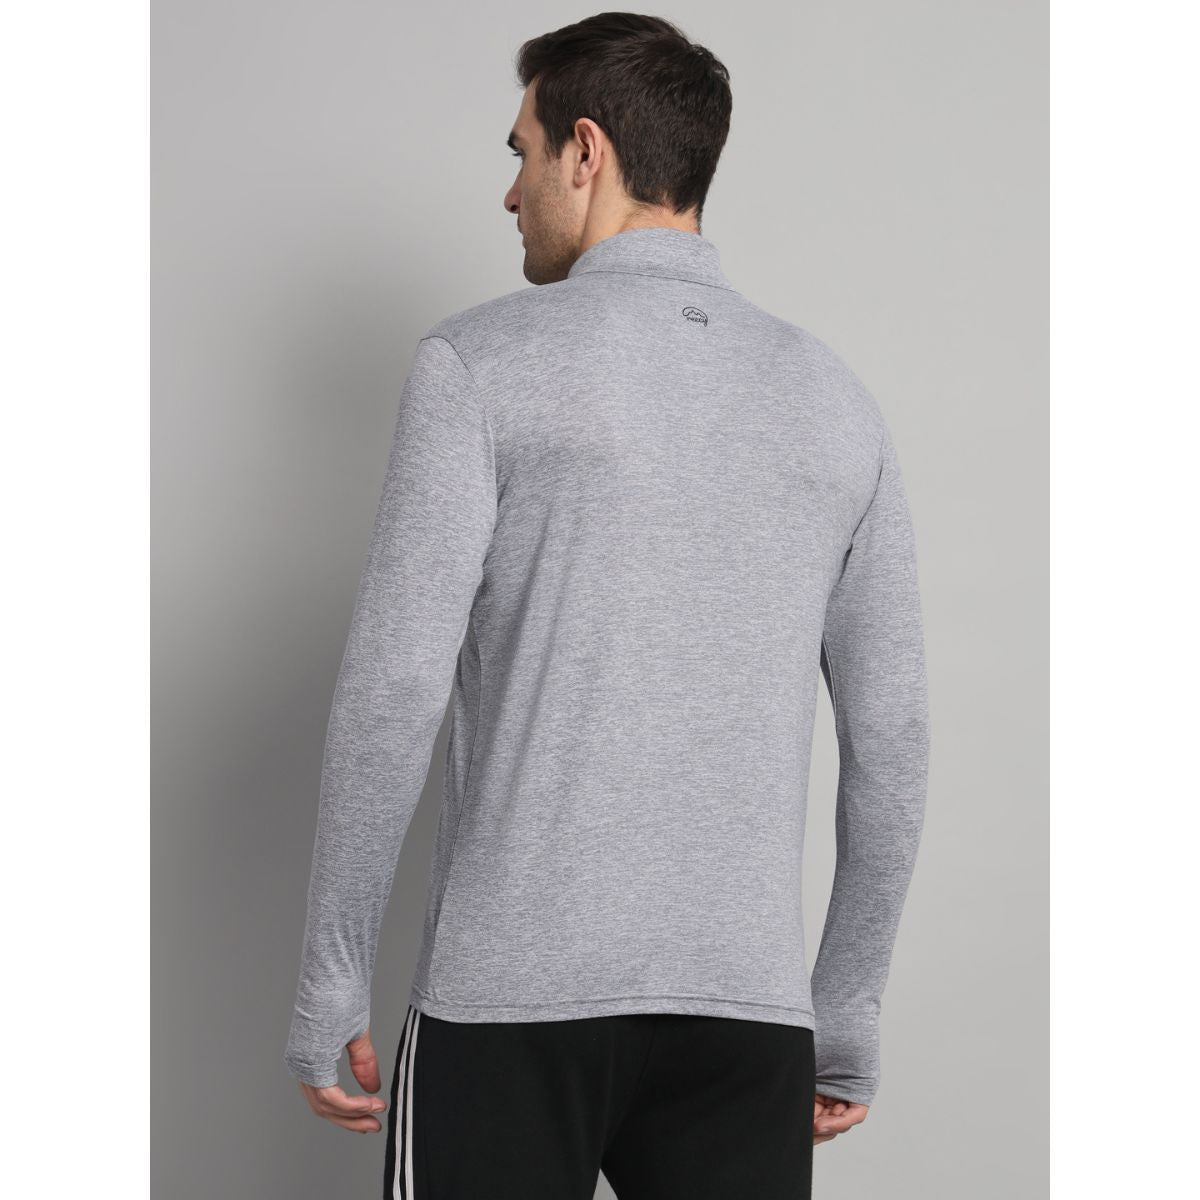 Men's Nomadic Full Sleeves T-Shirt / Baselayer - Silver Gray 3